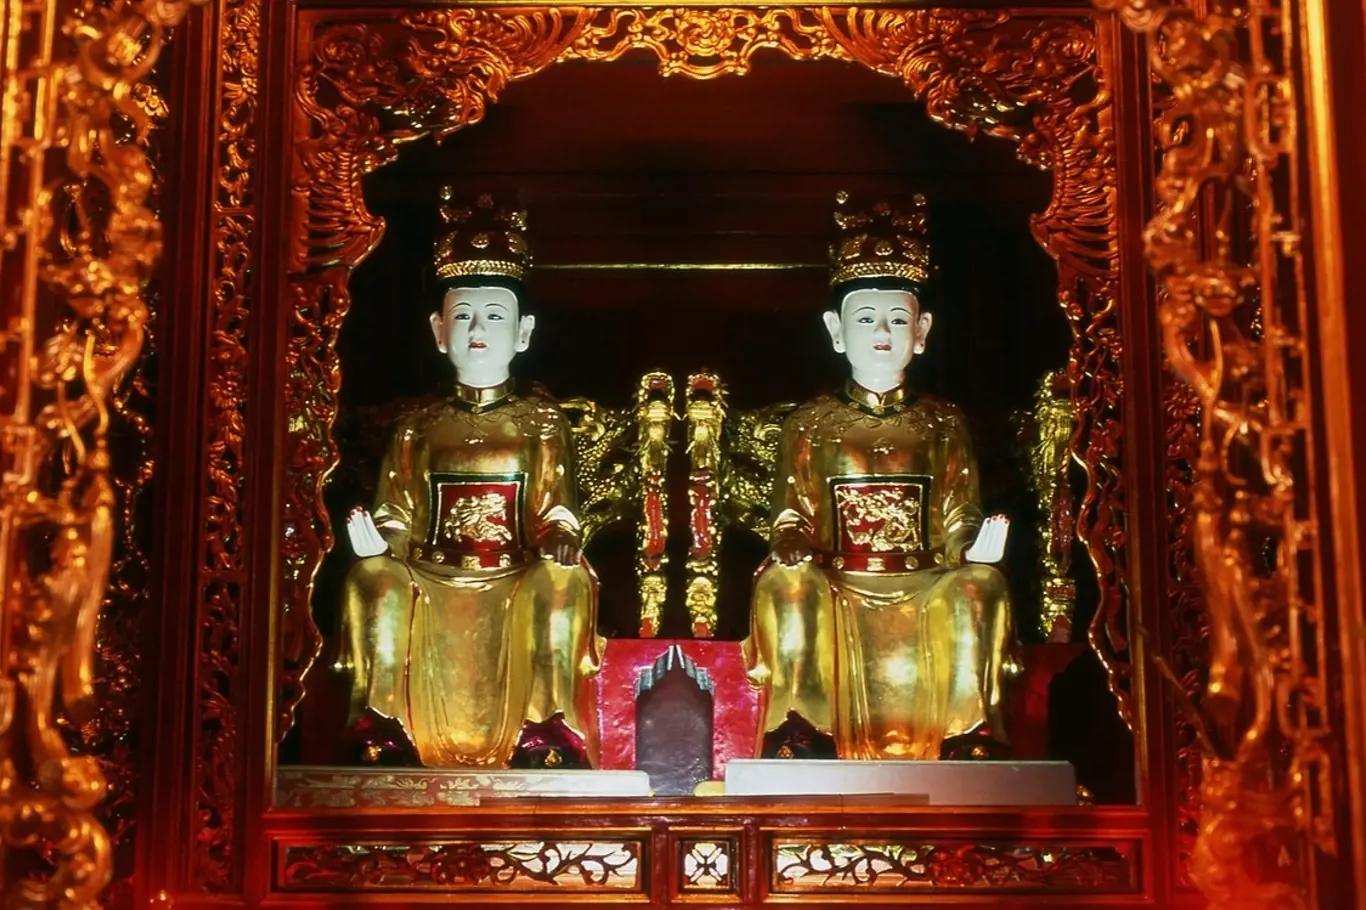 Sochy sester Trung ve vietnamském chrámu